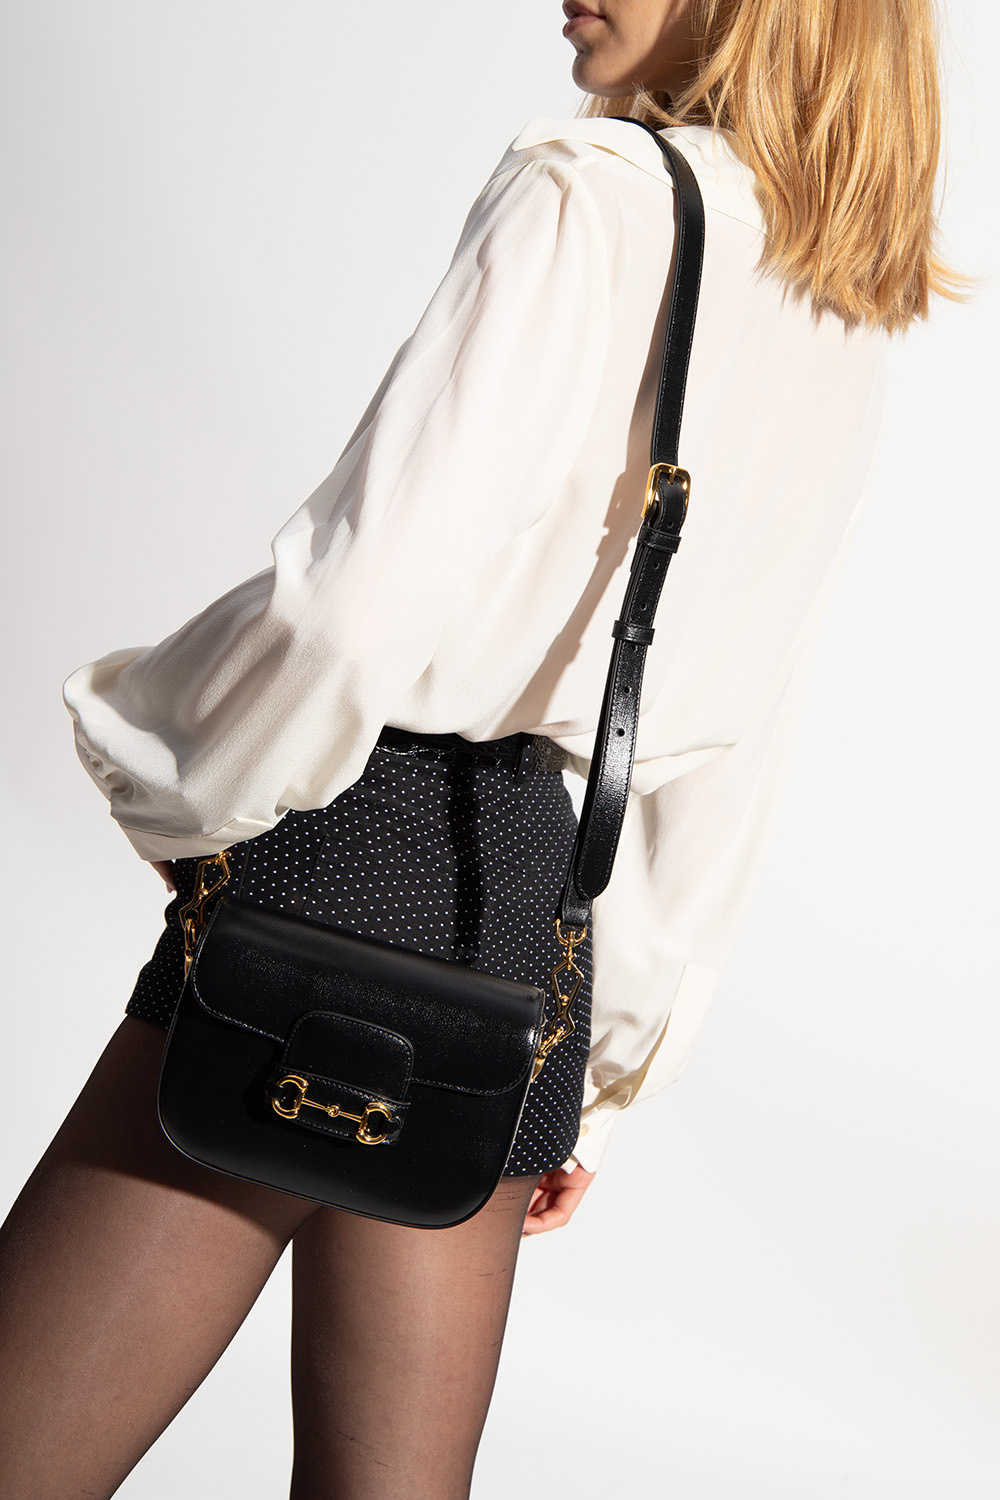 Gucci 'horsebit 1955 Mini' Shoulder Bag in Black